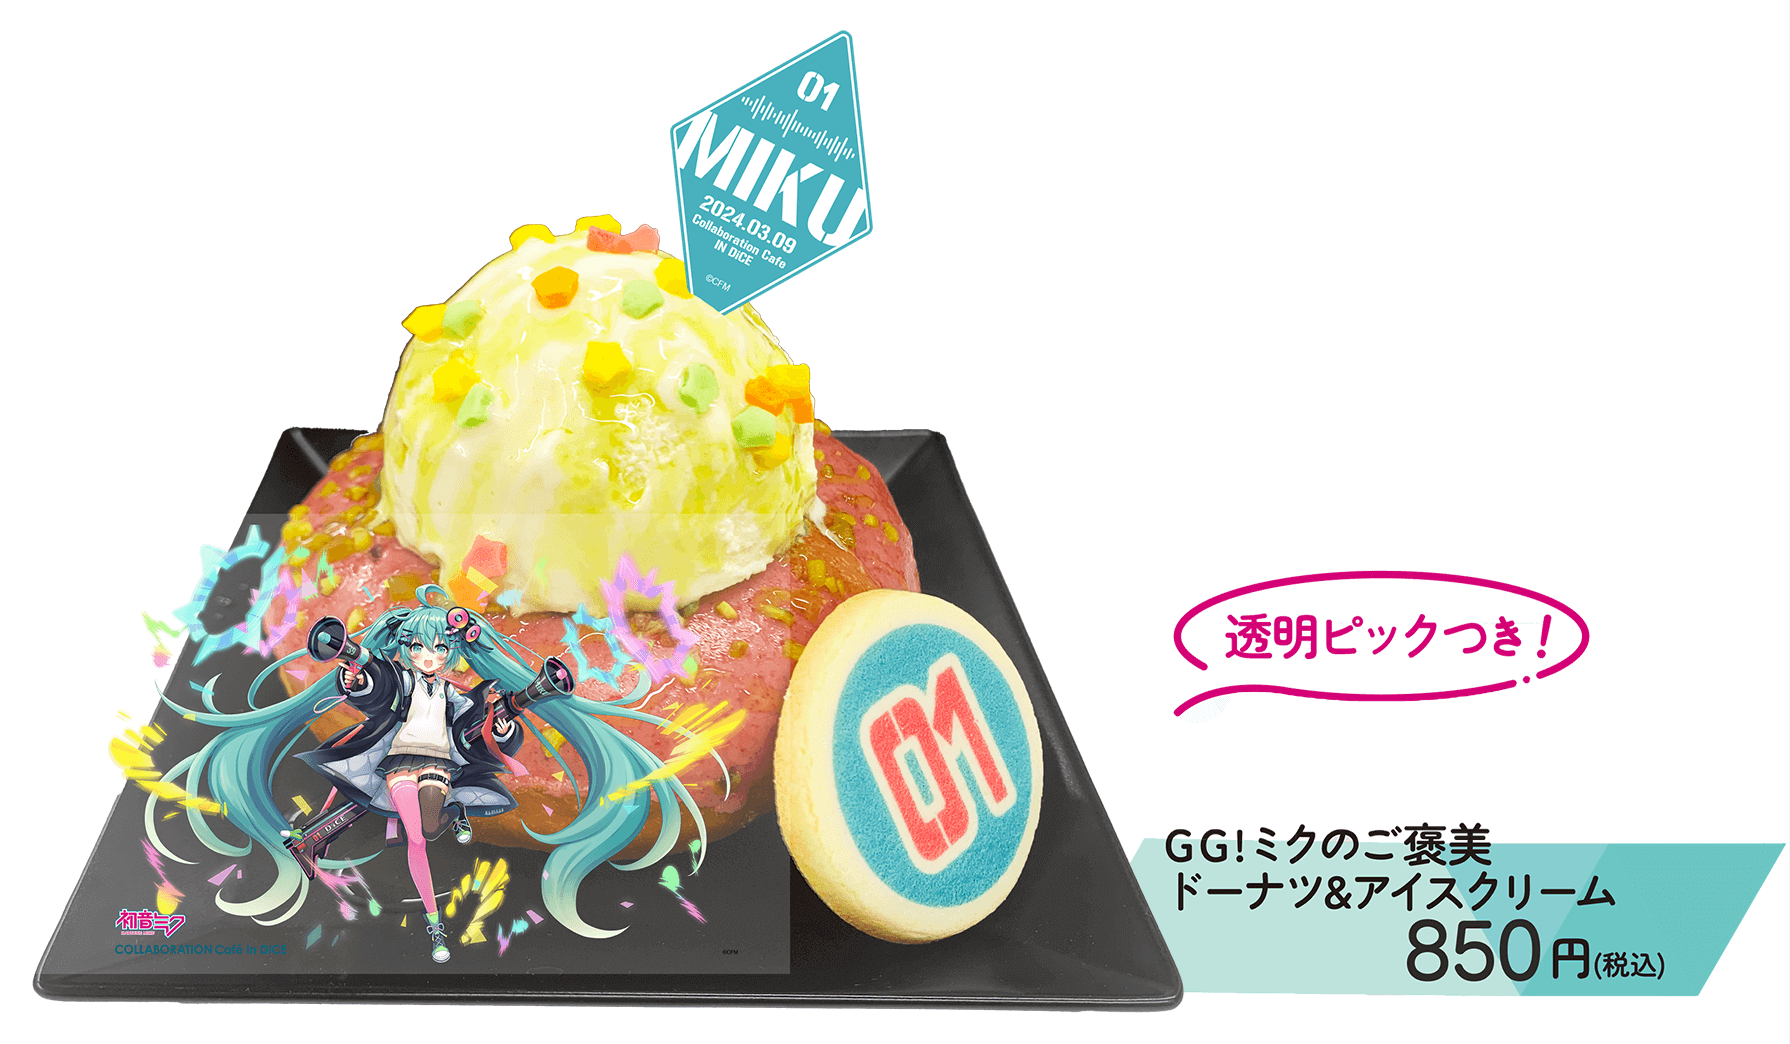 DiCE(ダイス)×初音ミク コラボレーションカフェ-GG!ミクのご褒美ドーナツ&アイスクリーム